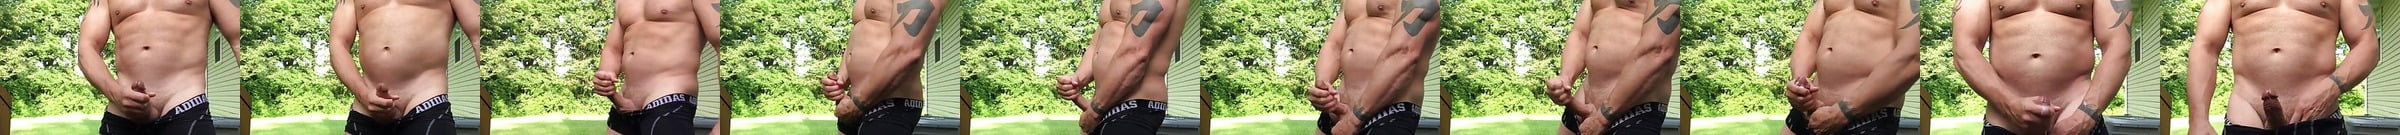 Tattooed Bear Jerk Off Outside Free Gay Muscle Hd Porn A2 Xhamster 